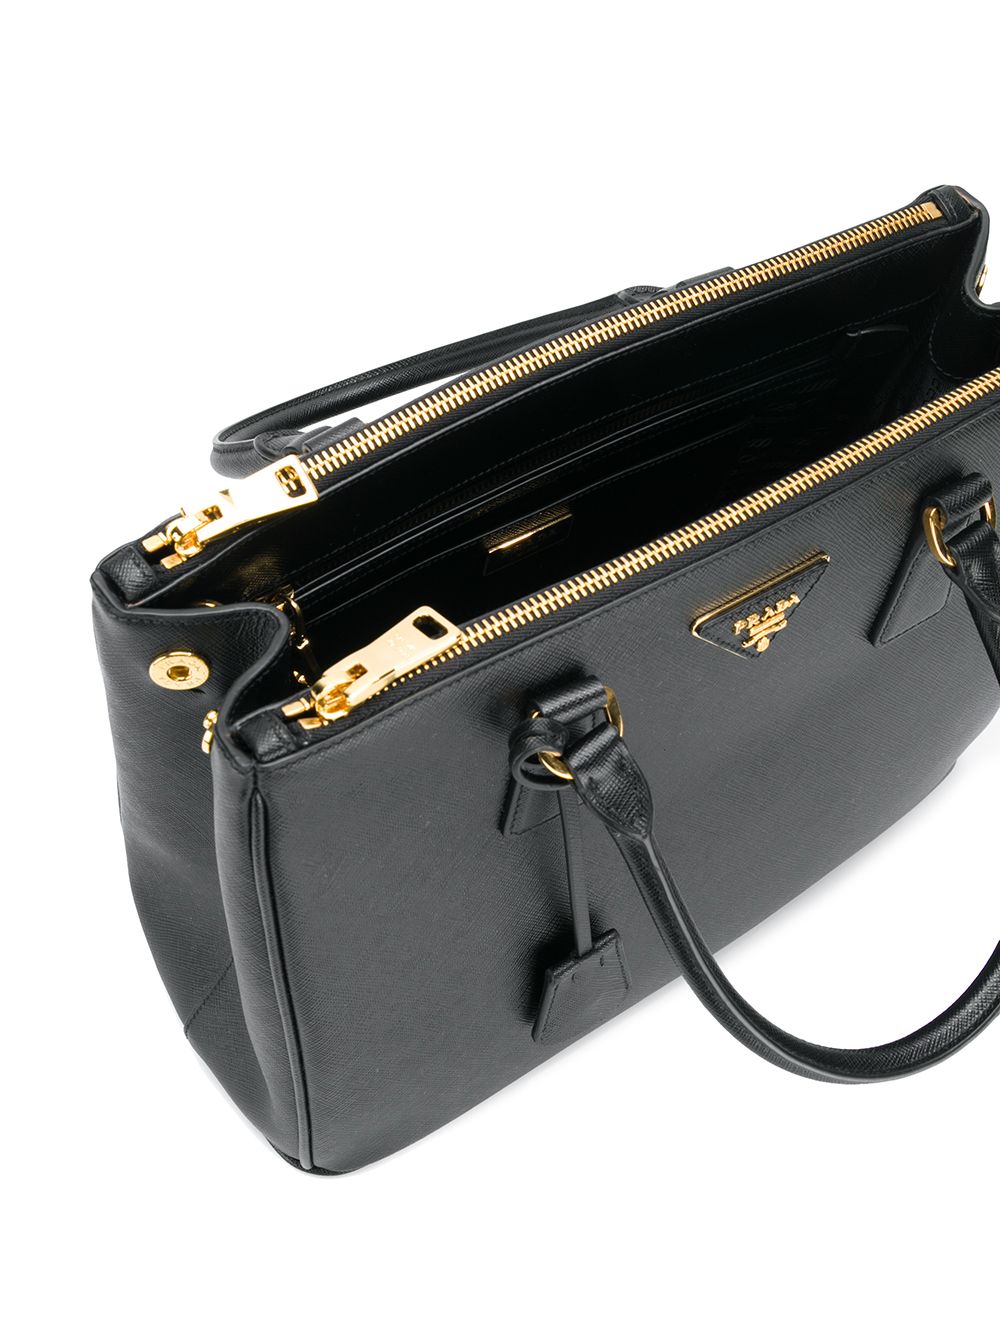 Prada Galleria Tote Bag, $4,600, farfetch.com